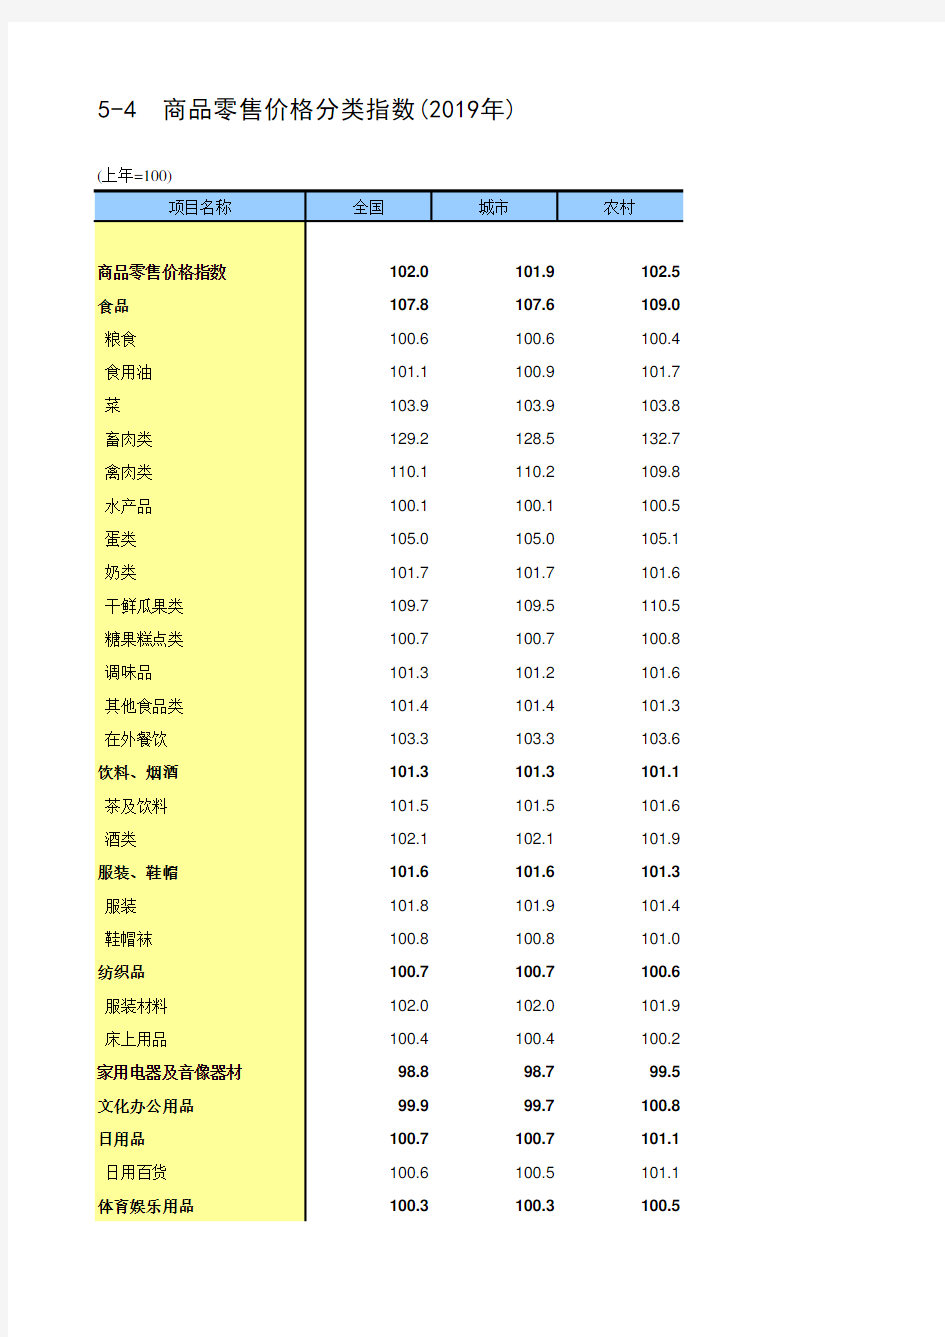 中国统计年鉴2020全国社会经济发展指标：5-4  商品零售价格分类指数(2019年)